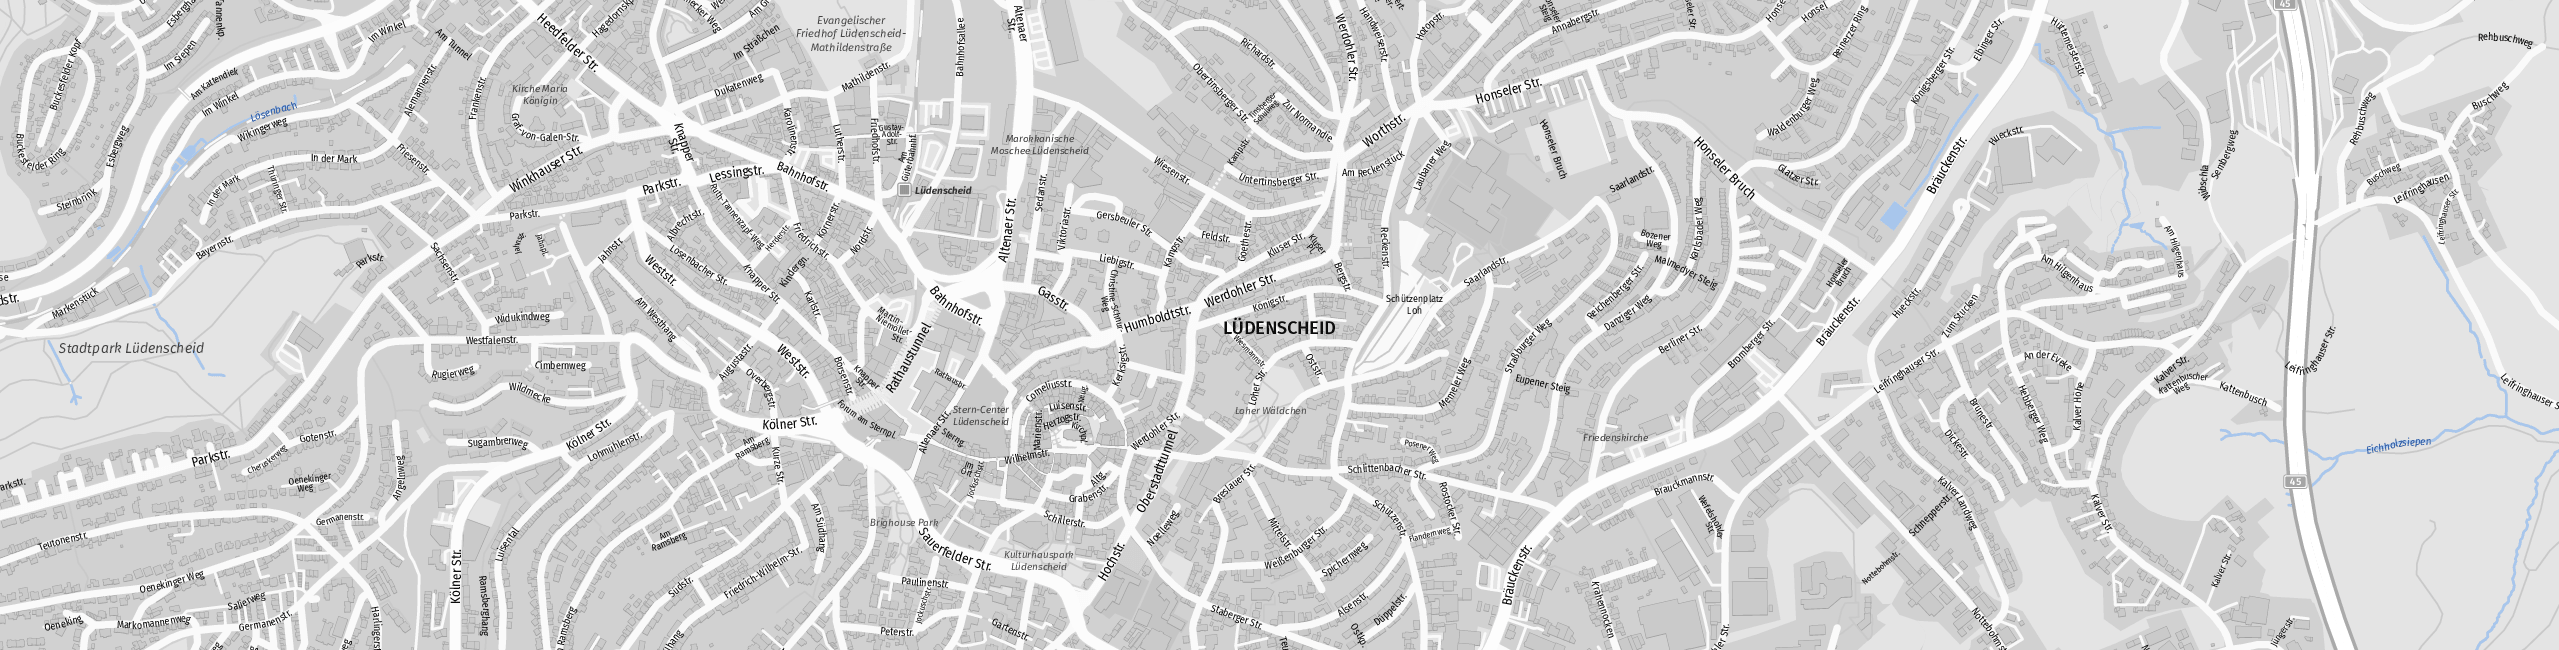 Stadtplan Lüdenscheid zum Downloaden.